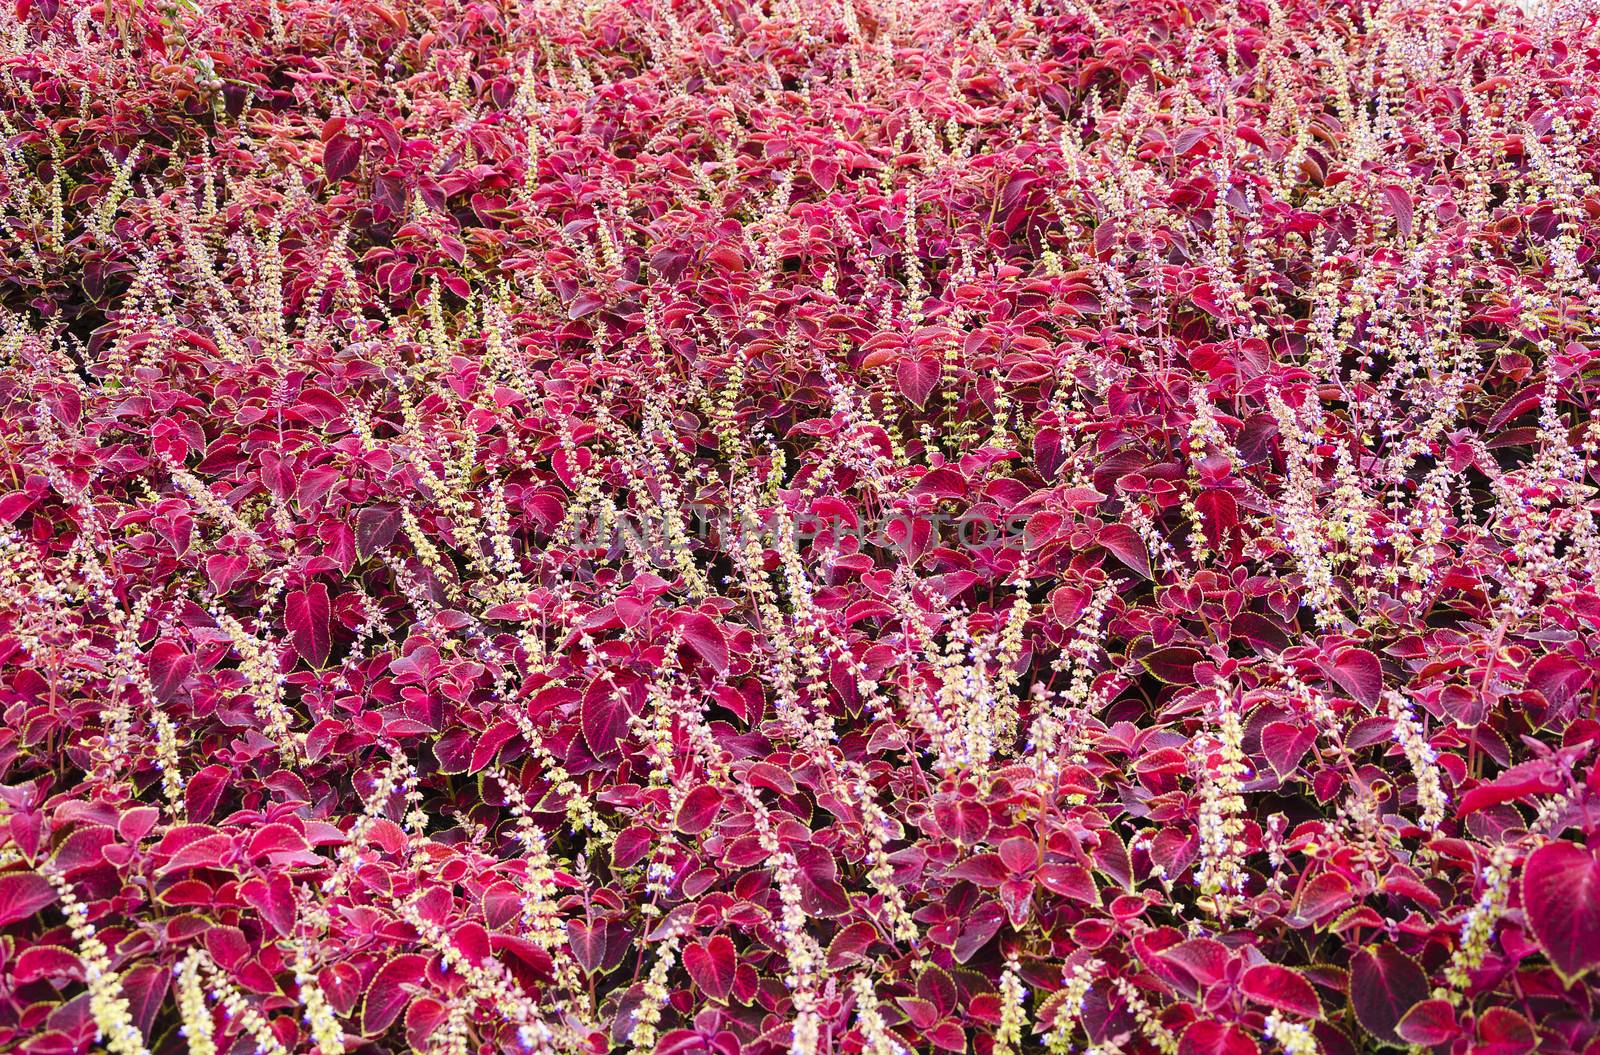 field of purple leaved flowers by Grufnar